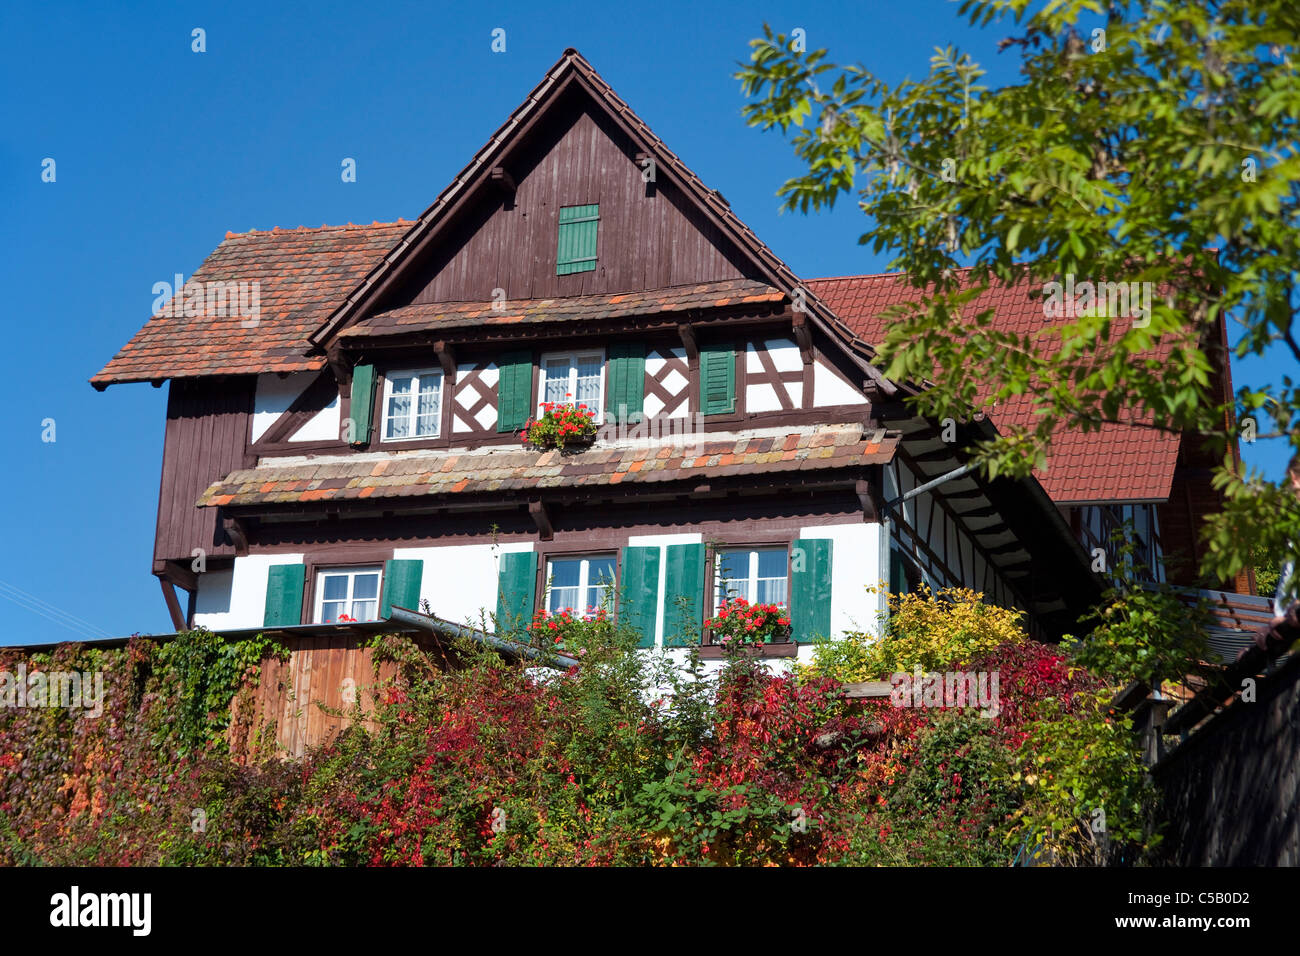 Bauernhaus in Sasbachwalden, Schwarzwald, Farmhouse in Sasbachwalden, Black Forest Stock Photo